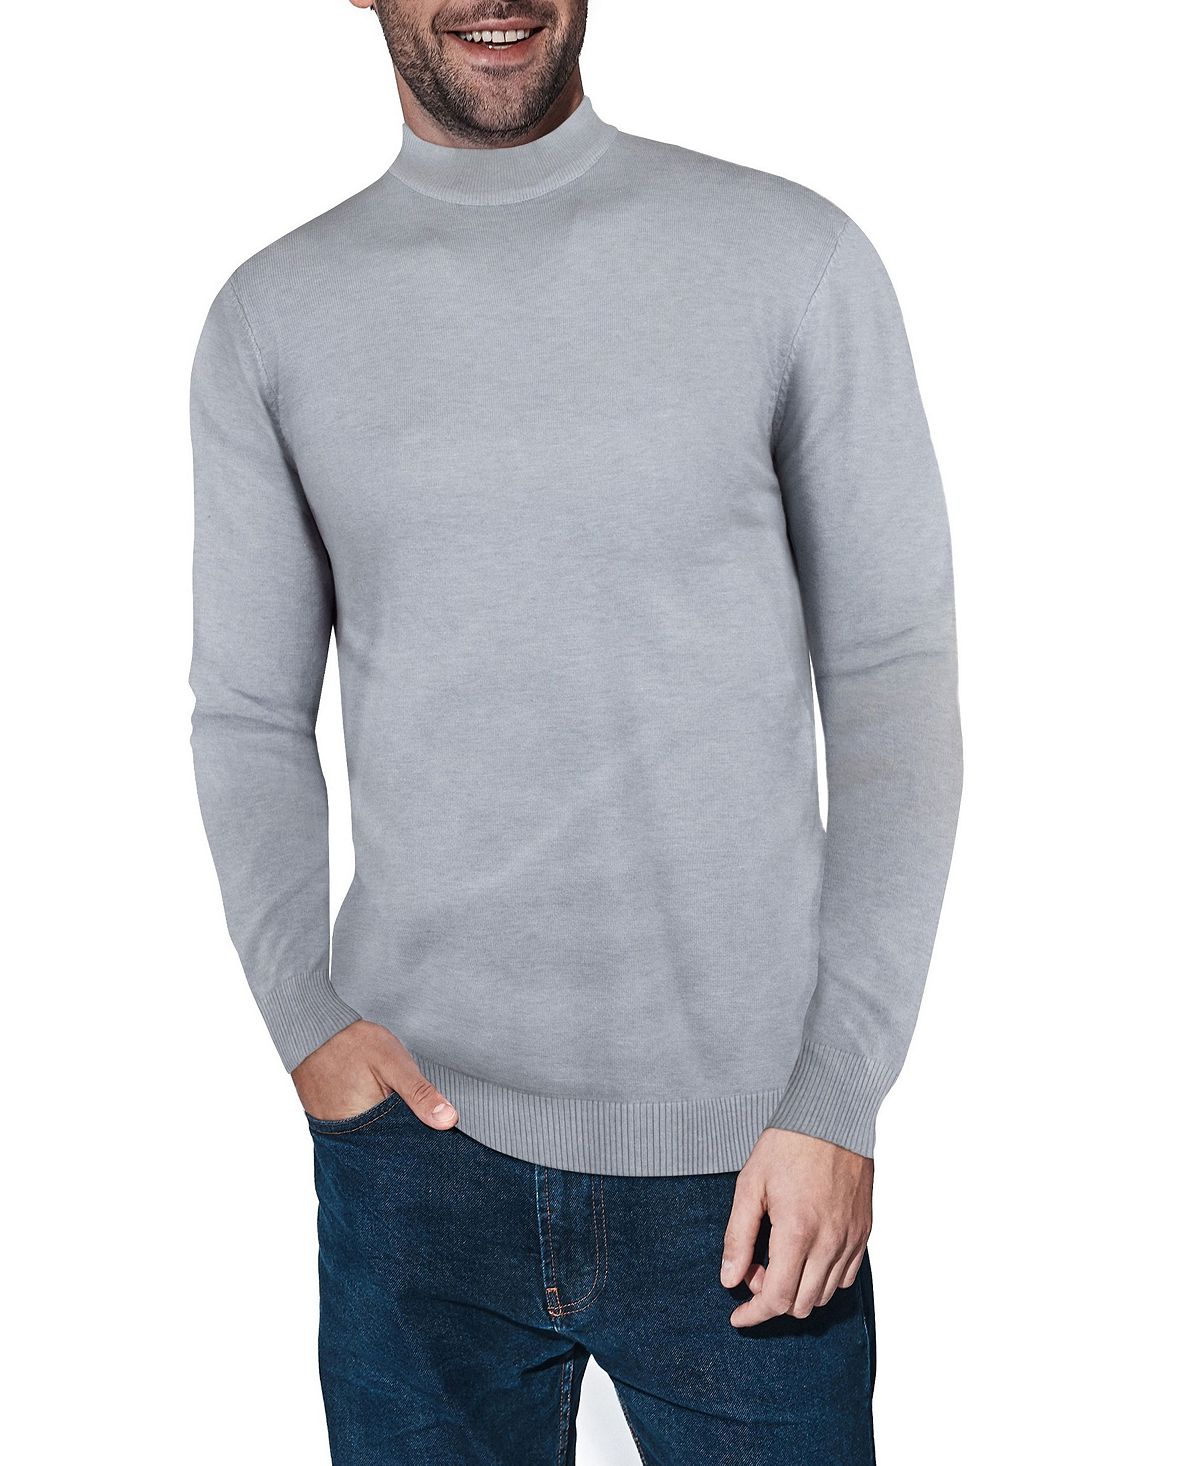 Мужской базовый пуловер средней плотности с воротником-стойкой X-Ray графеновый базовый слой средней плотности с воротником стойкой женские whitespace цвет graphene black